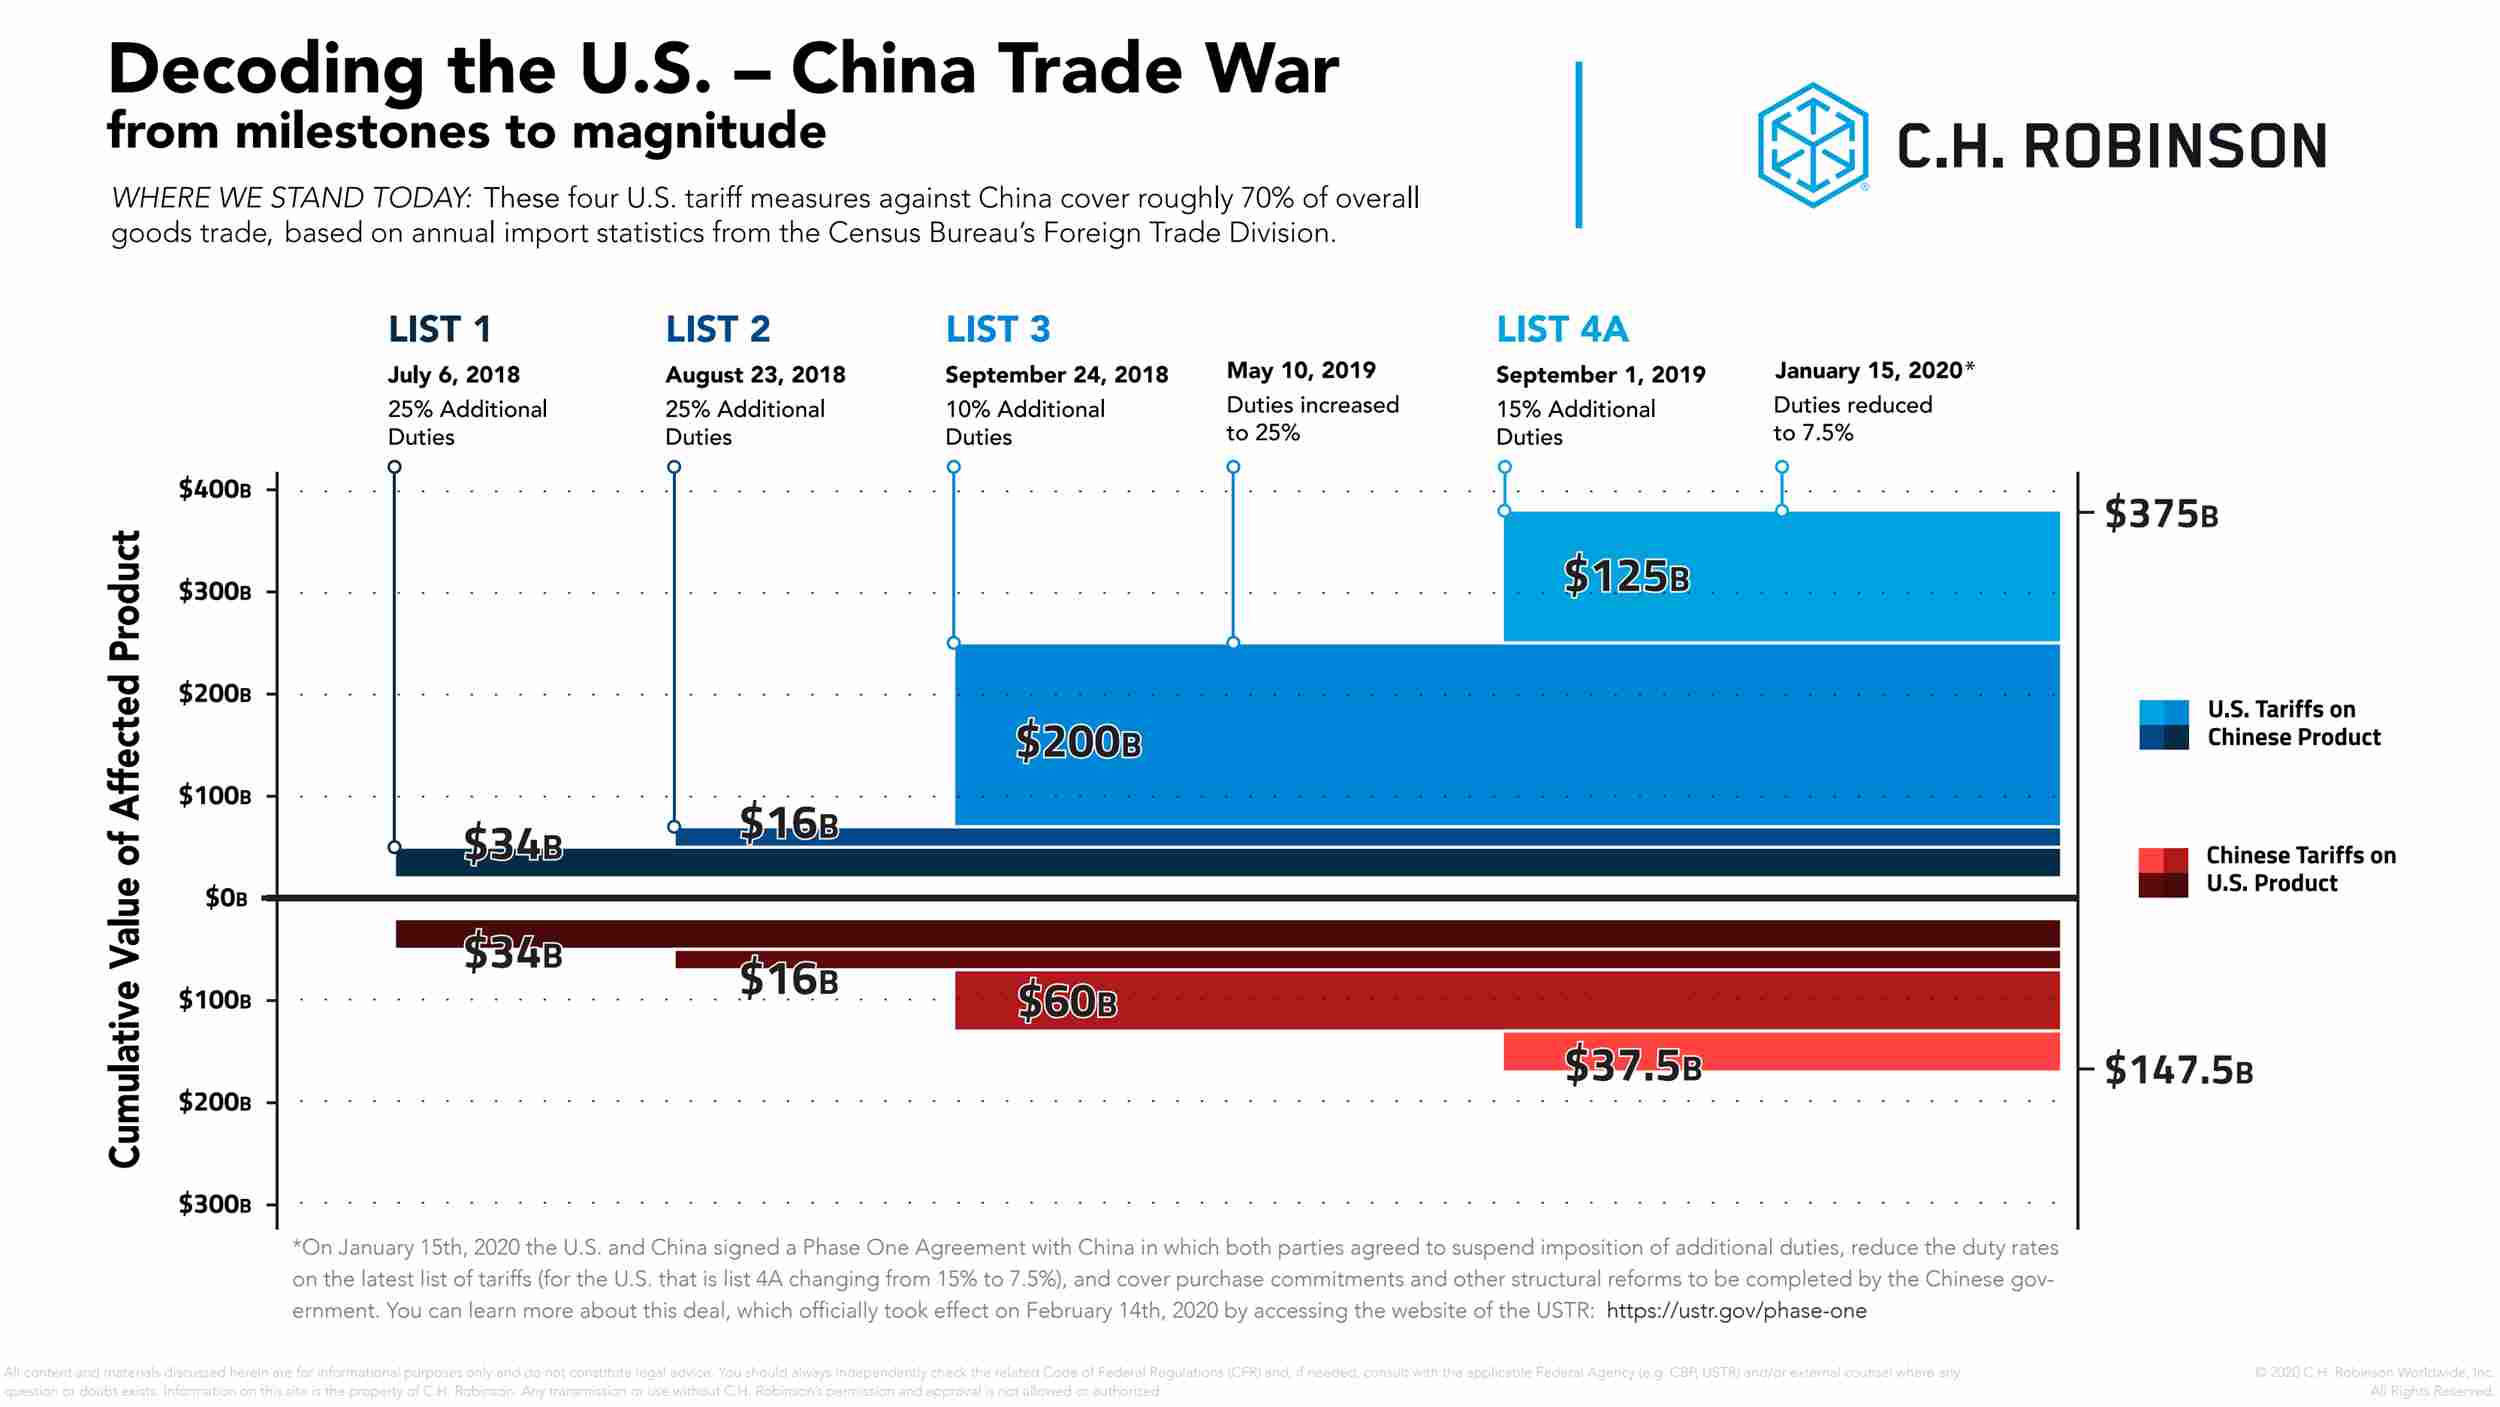 Grafik zur Entschlüsselung des Handelskrieges zwischen den USA und China